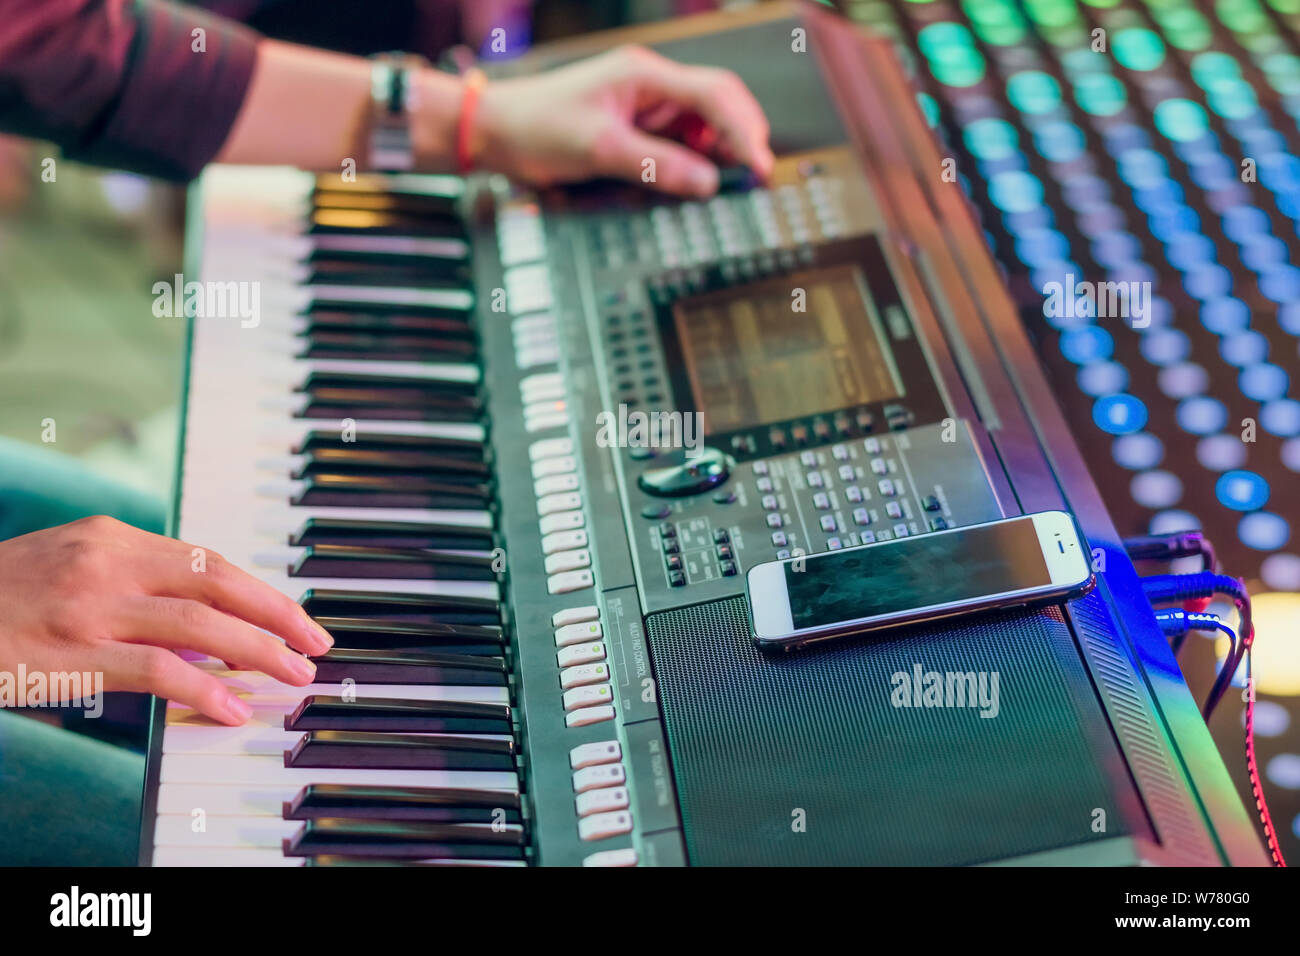 Musiker spielen elektronisches Keyboard Synthesizer, indem Sie ihr  Smartphone als Leitlinien für das Spielen auf der Bühne. Selektiver Fokus  auf dem Smartphone Stockfotografie - Alamy